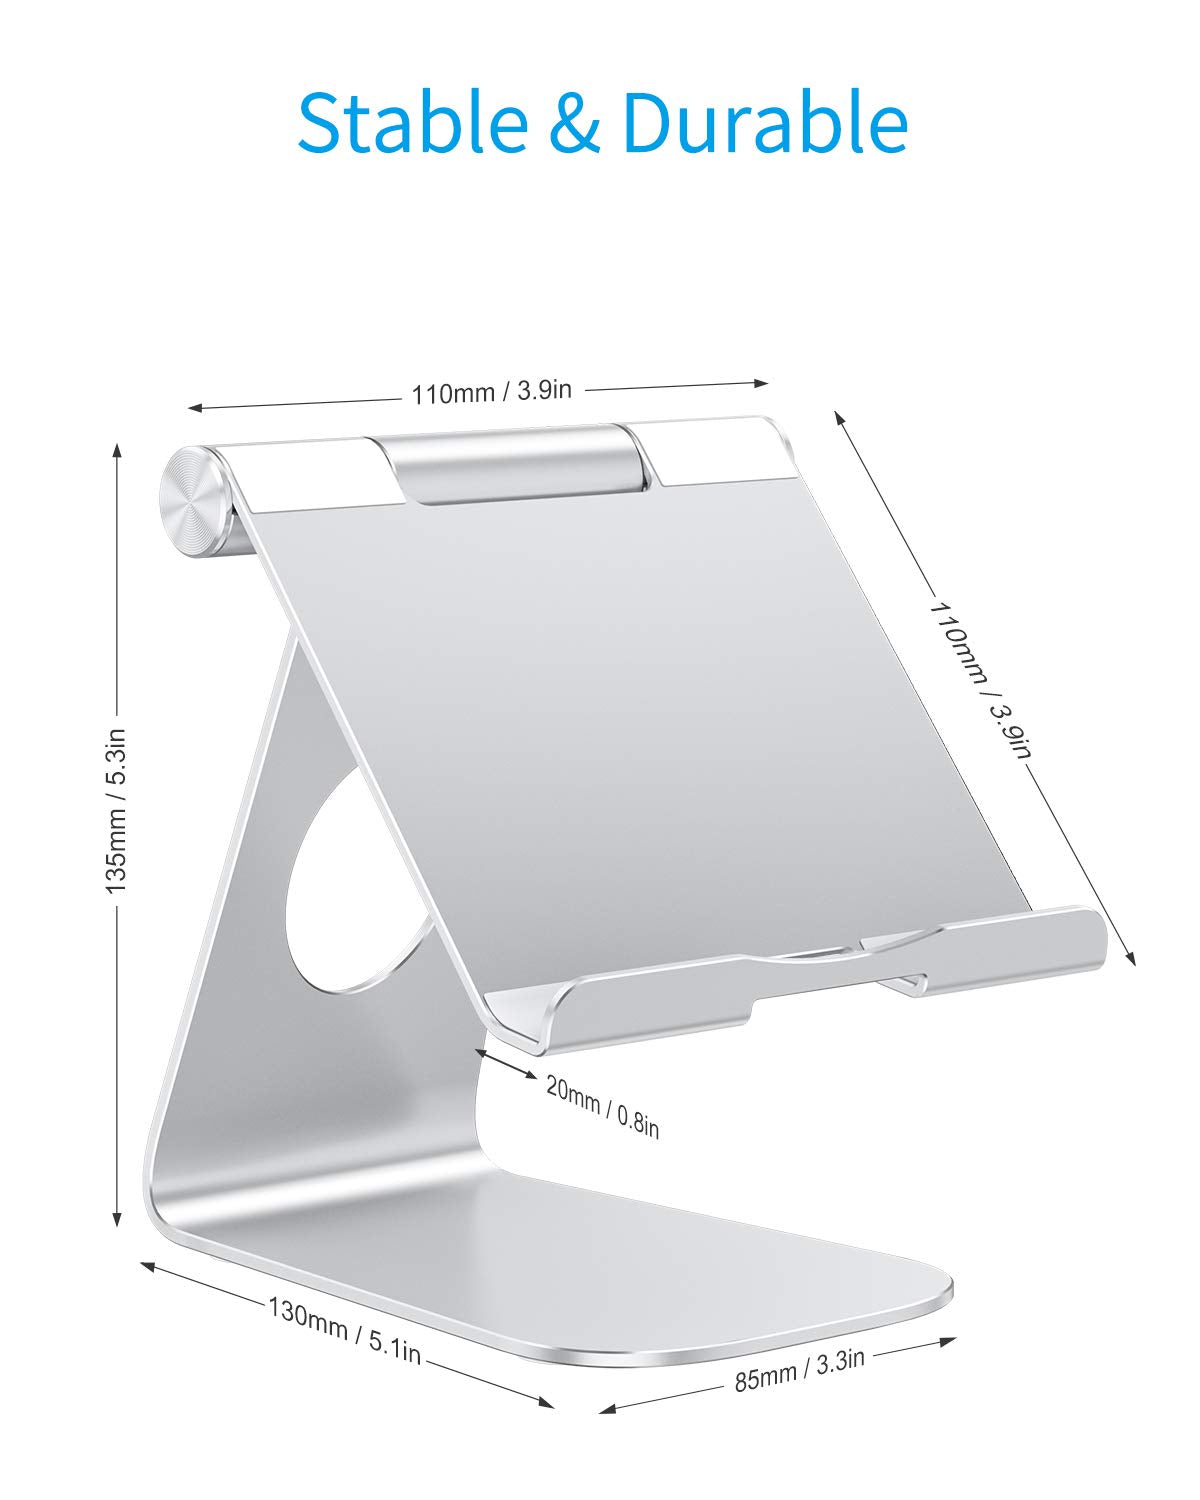 Adjustable Stand for iPad | yrGear Australia